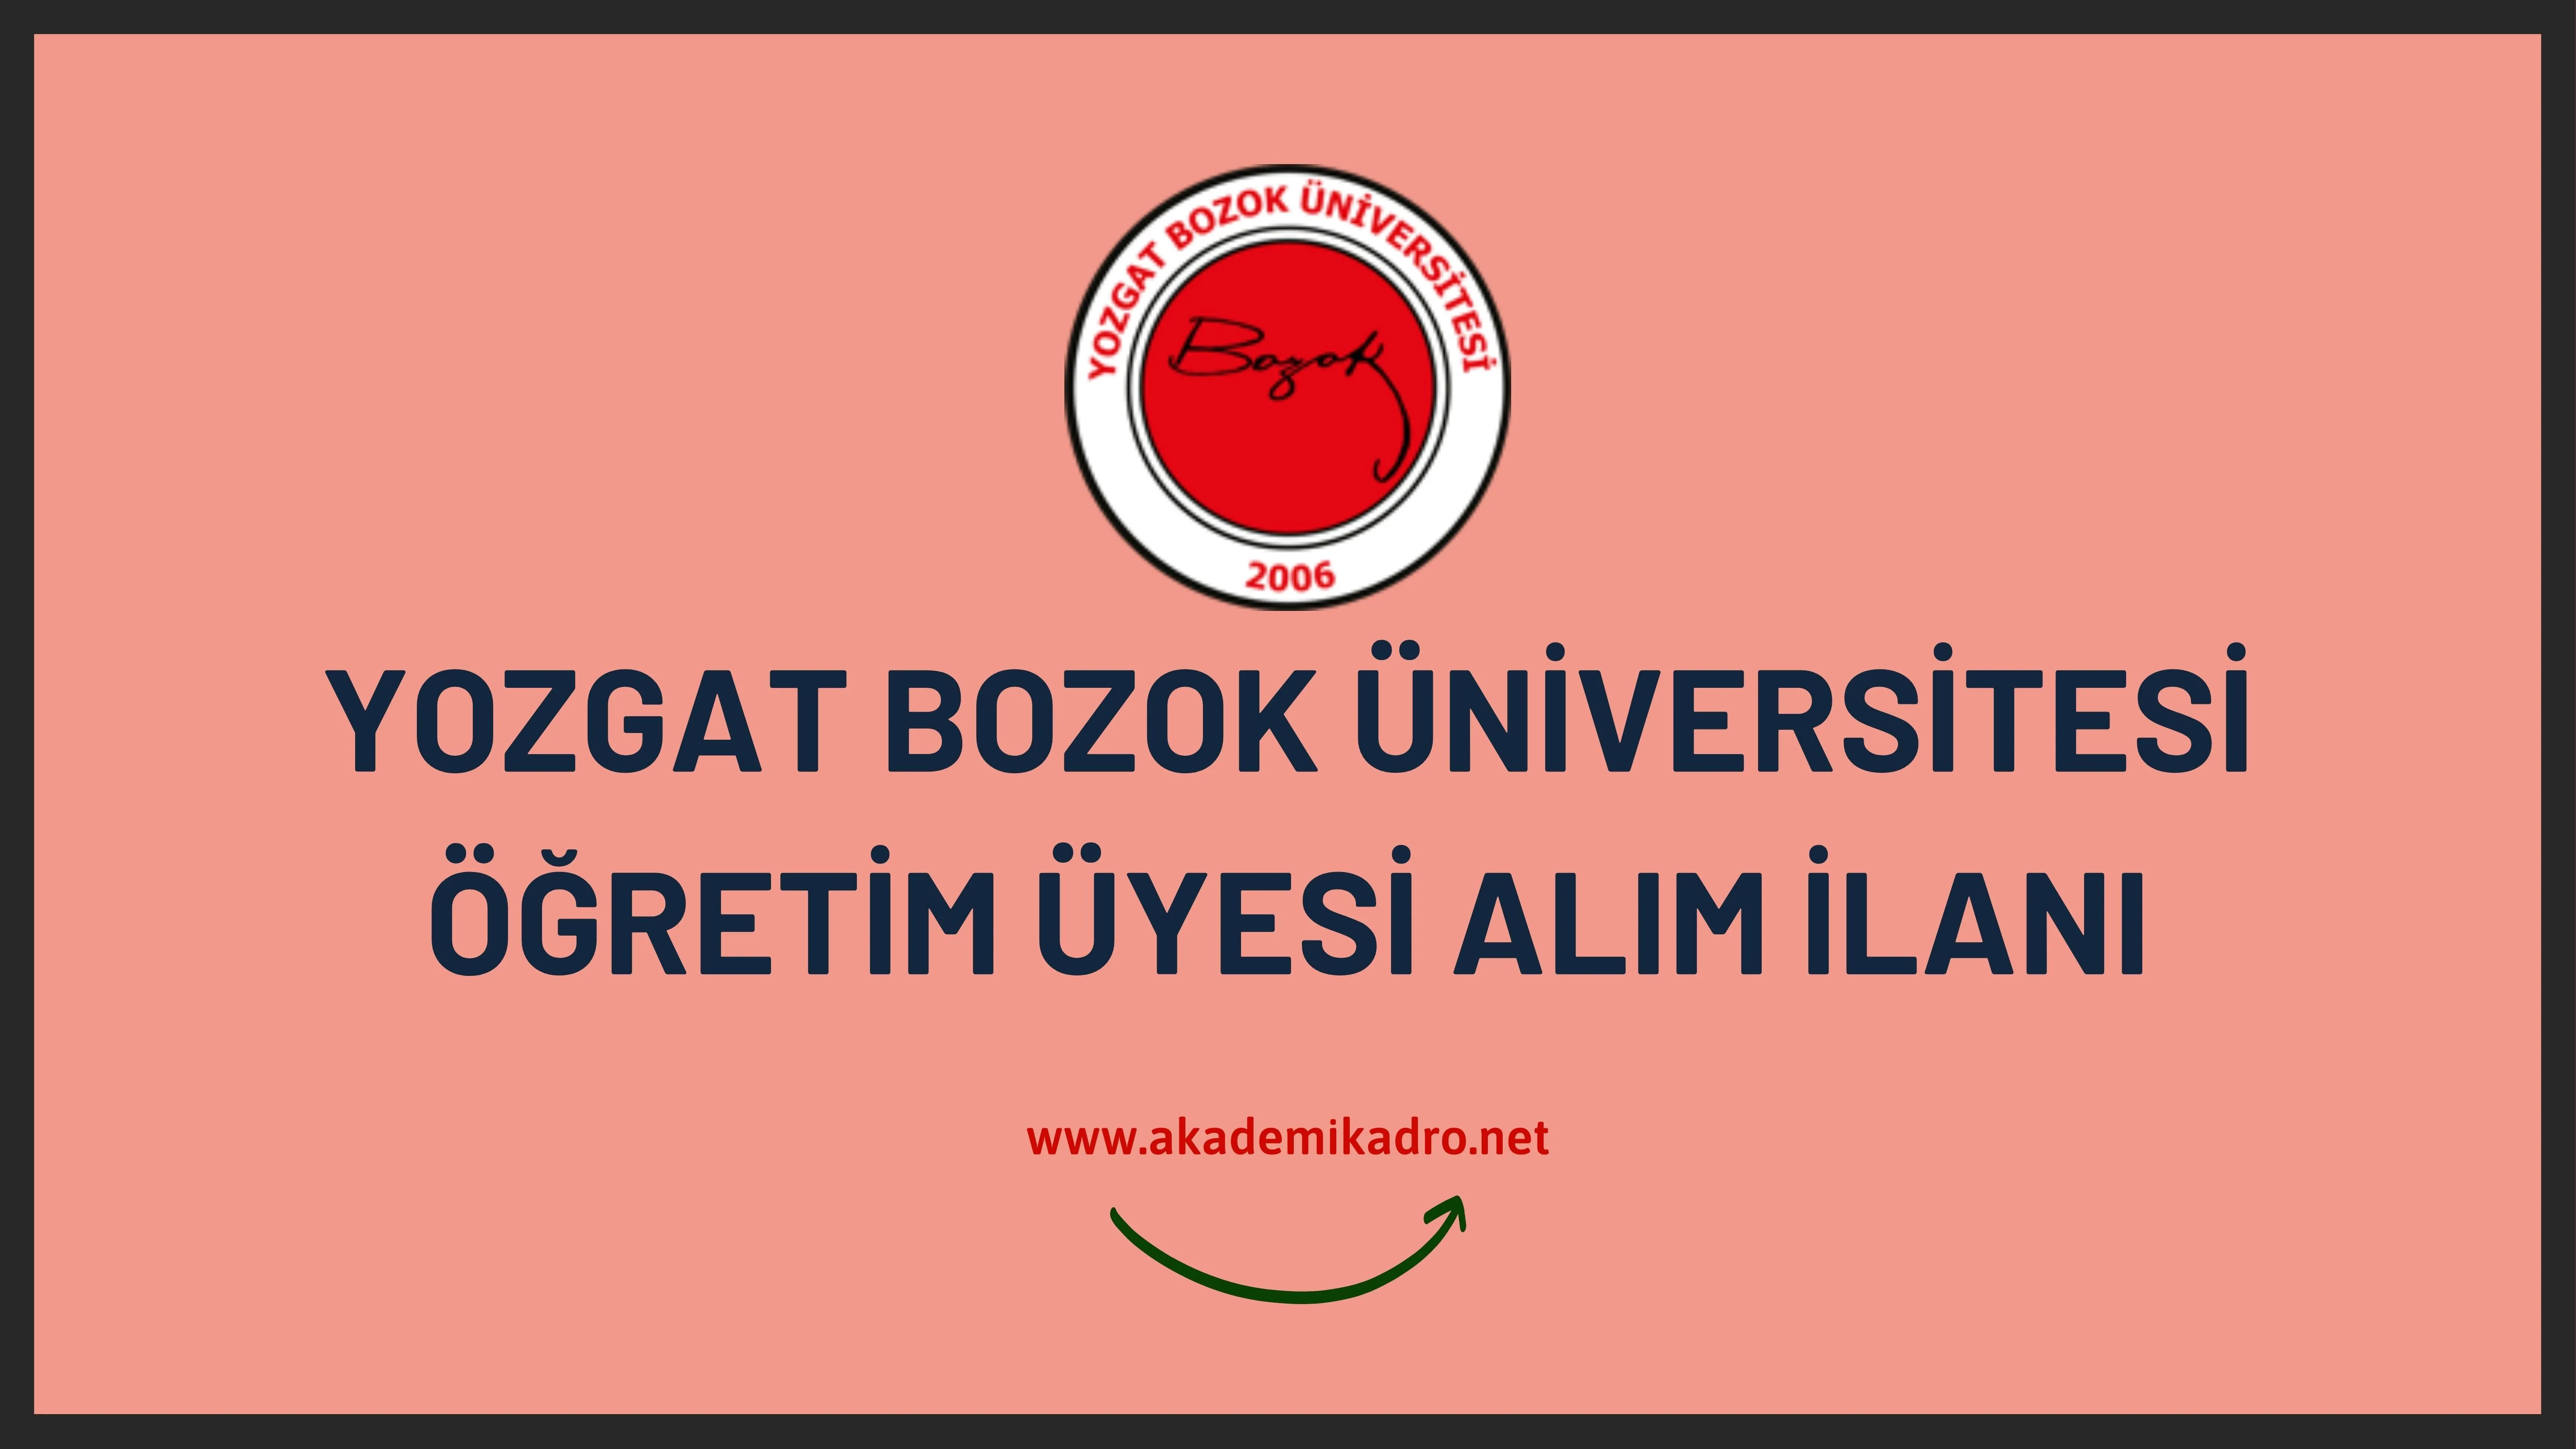 Yozgat Bozok Üniversitesi birçok alandan 29 öğretim üyesi alacak.